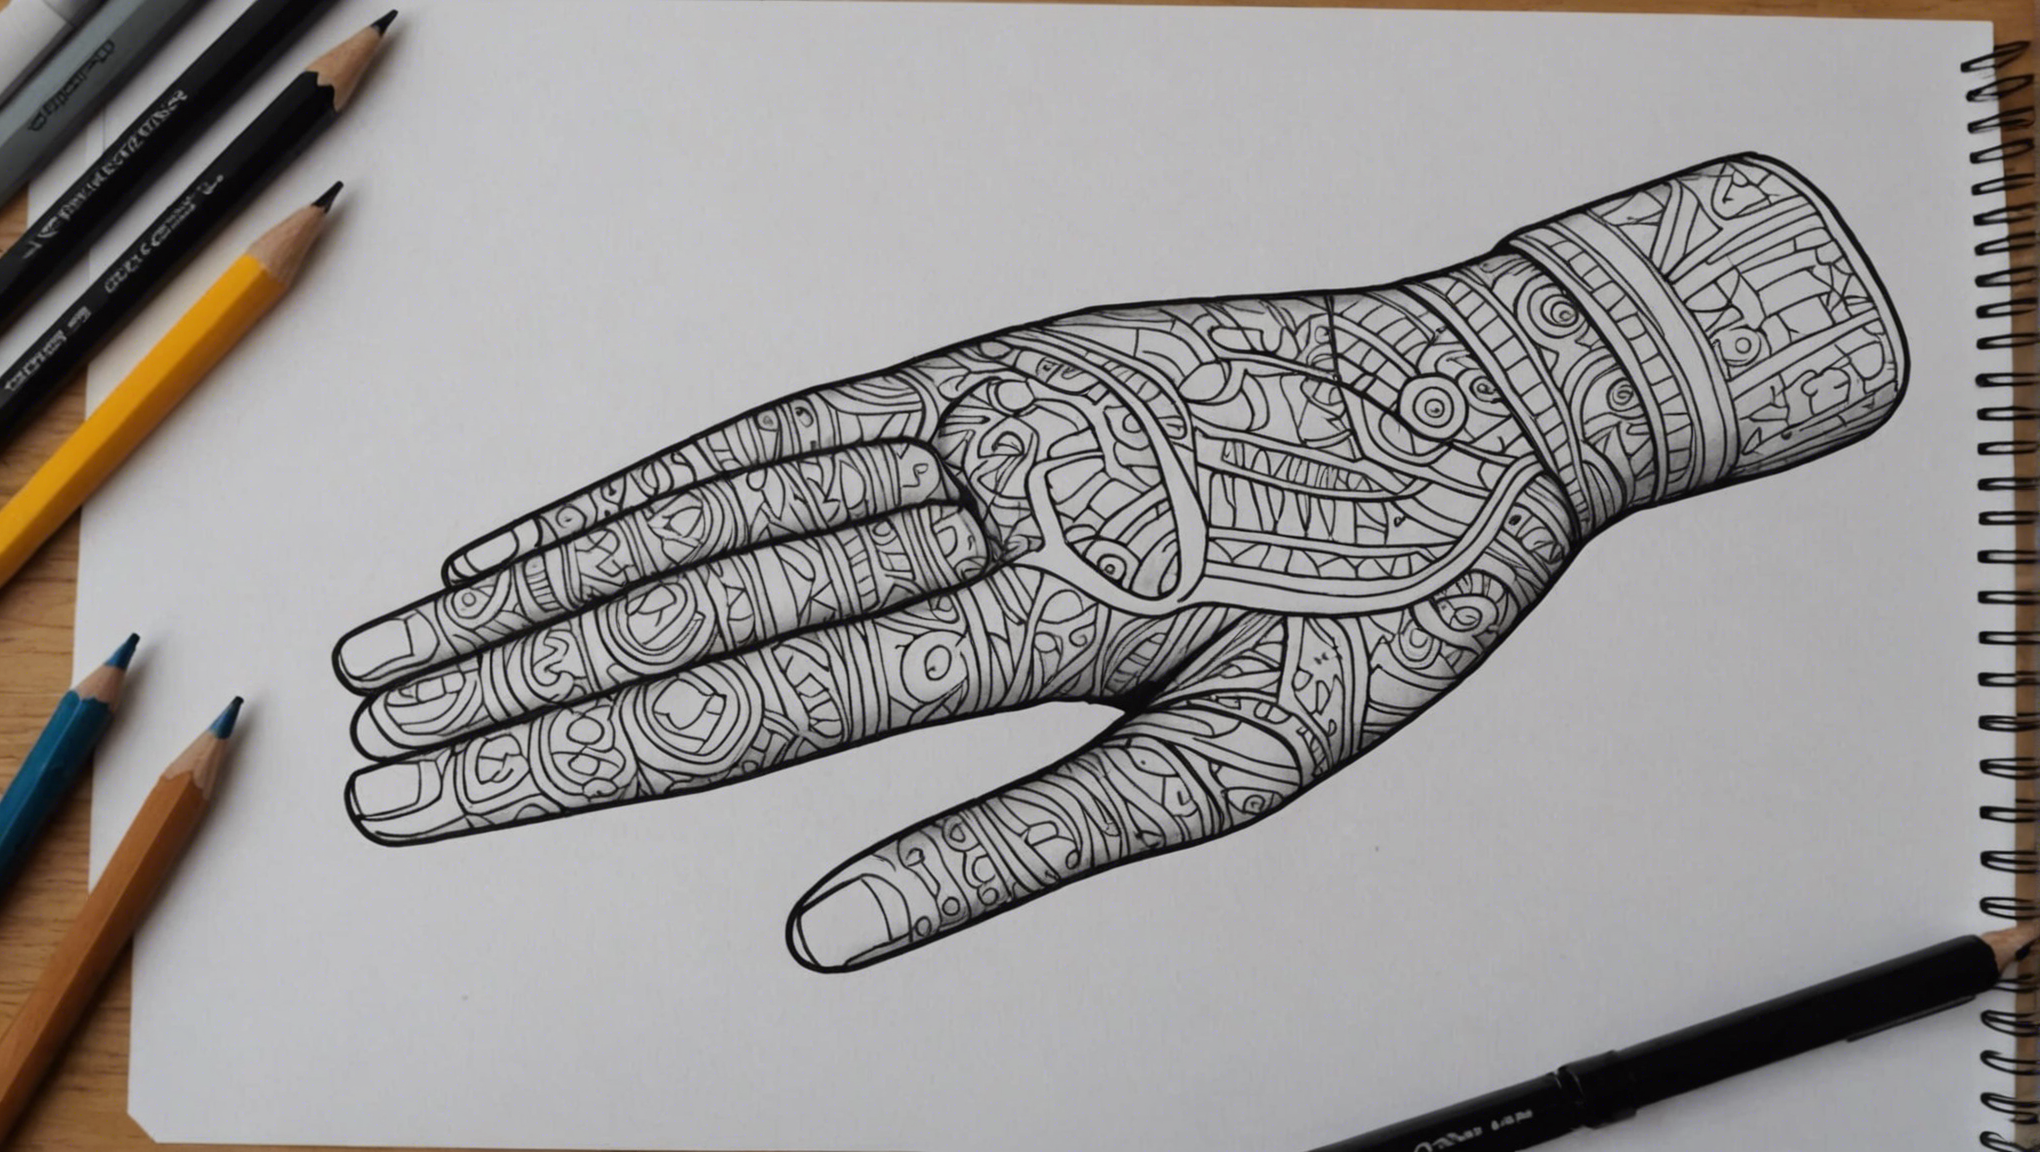 découvrez comment dessiner une main tenant une autre main grâce à nos conseils et astuces pour réaliser cette illustration artistique.